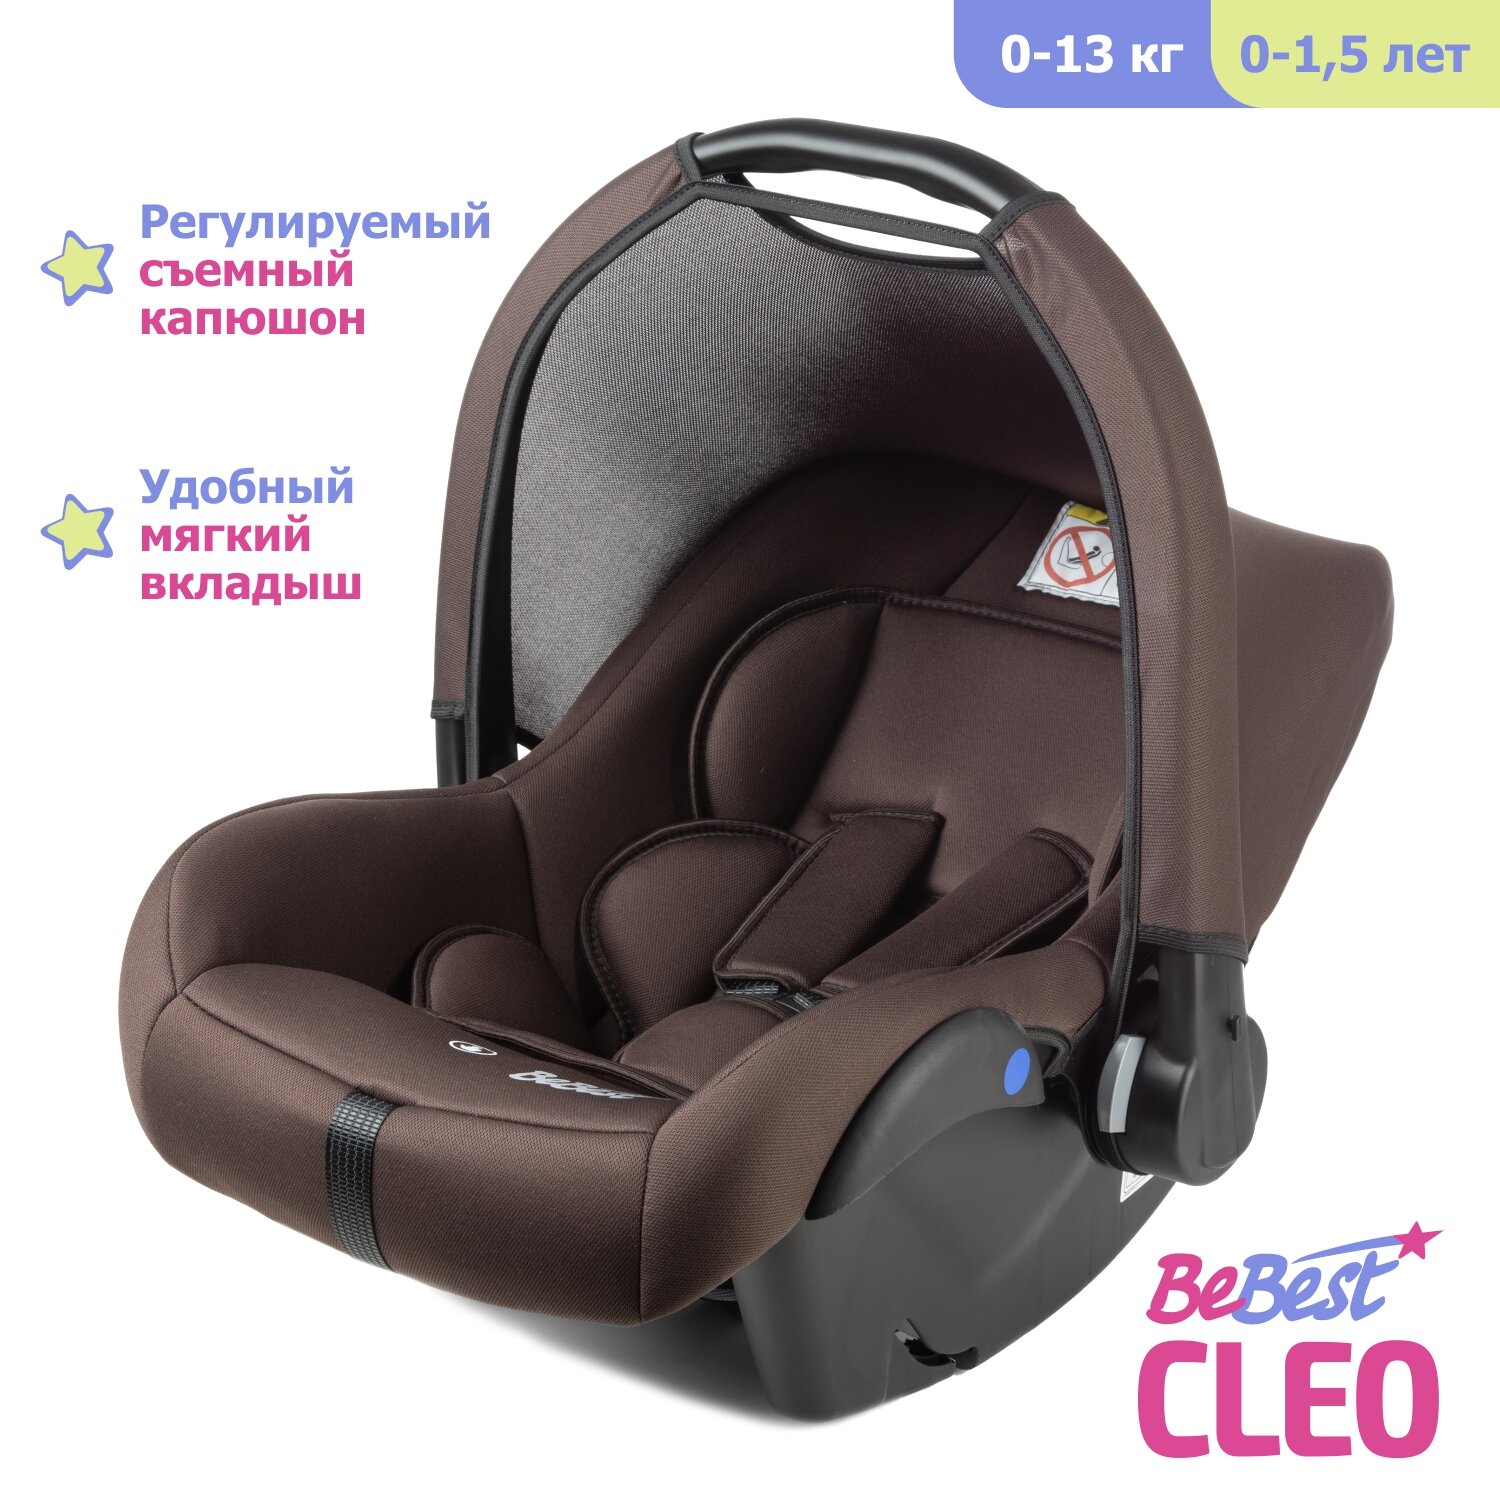 Автолюлька для новорожденных BeBest Cleo от 0 до 13 кг цвет brown - фото 1